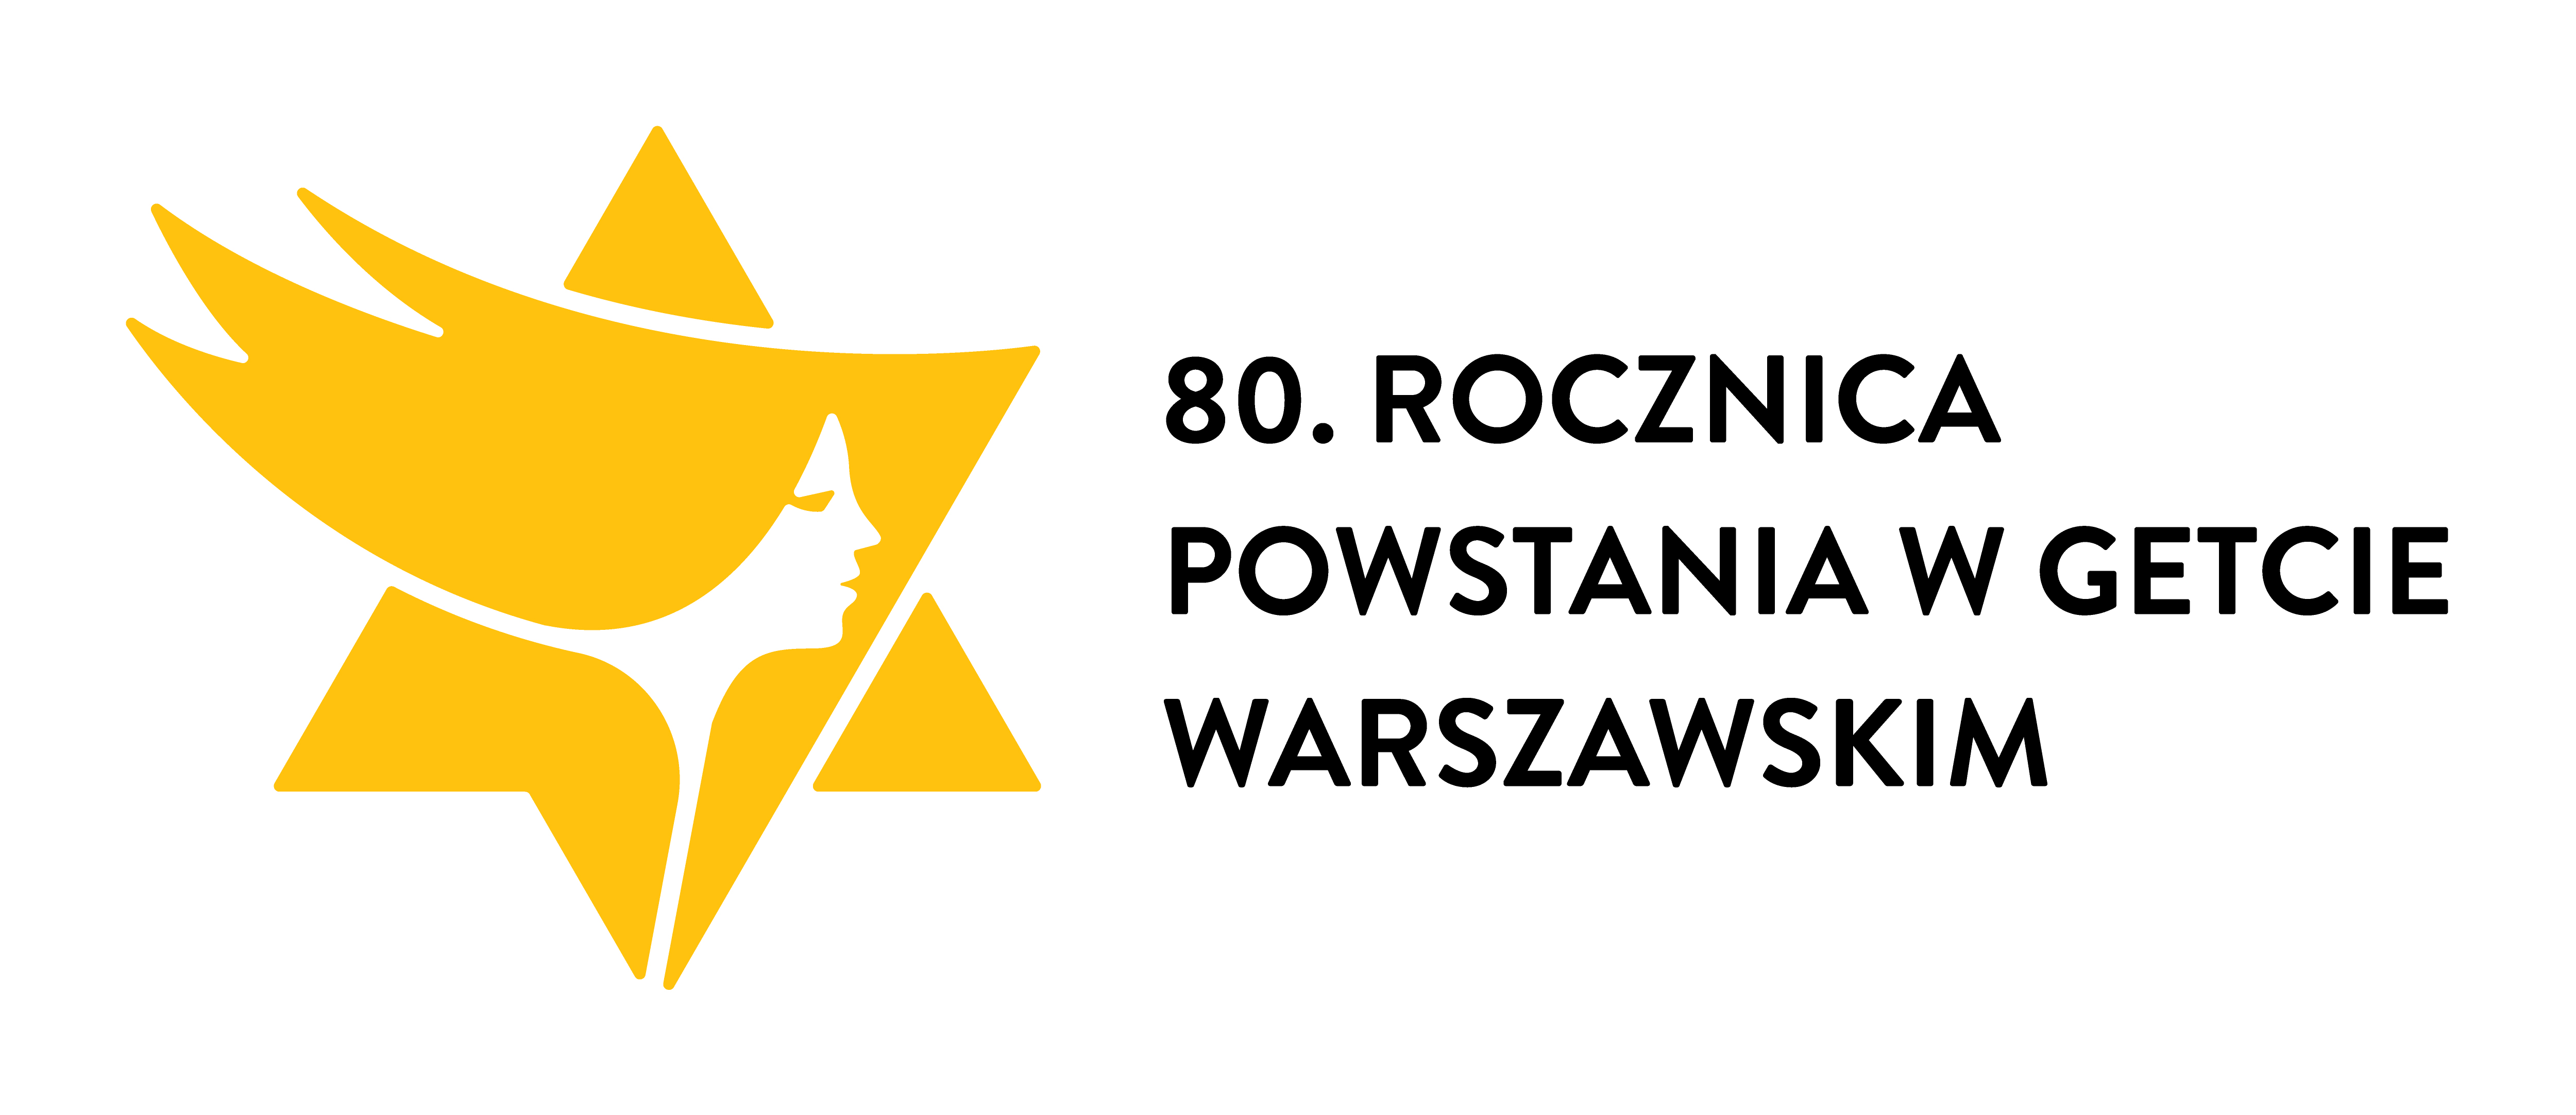 Logo 80. rocznicy wybuchu powstania w getcie warszawskim